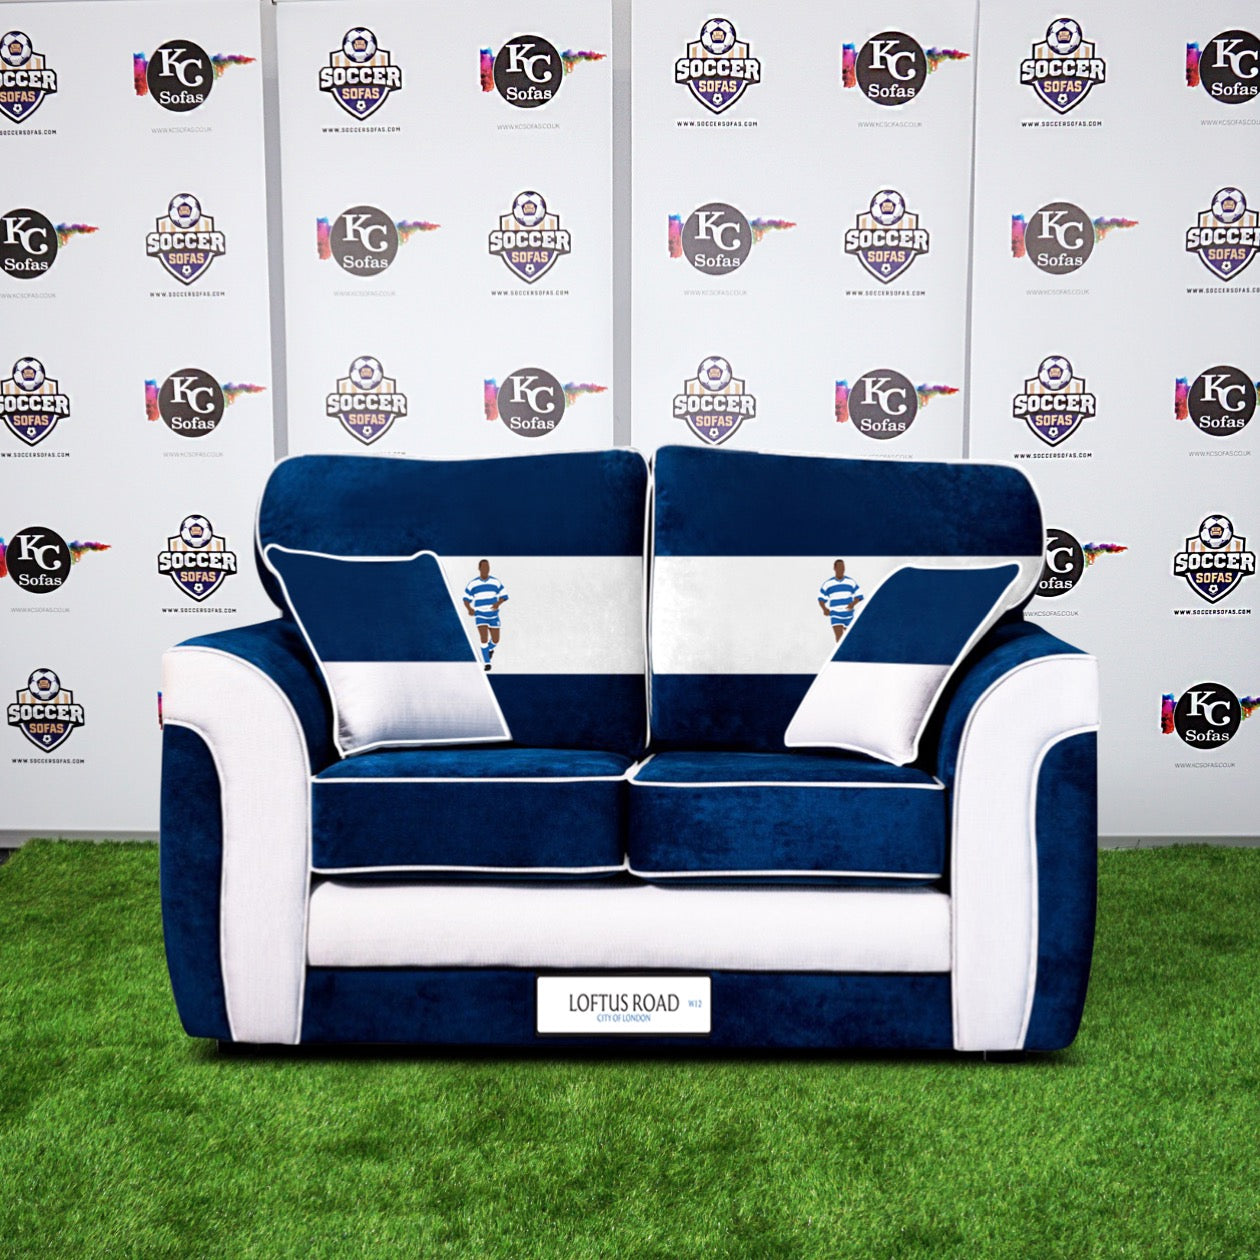 Loftus Road 2 Seater Sofa (Queens Park Rangers FC)